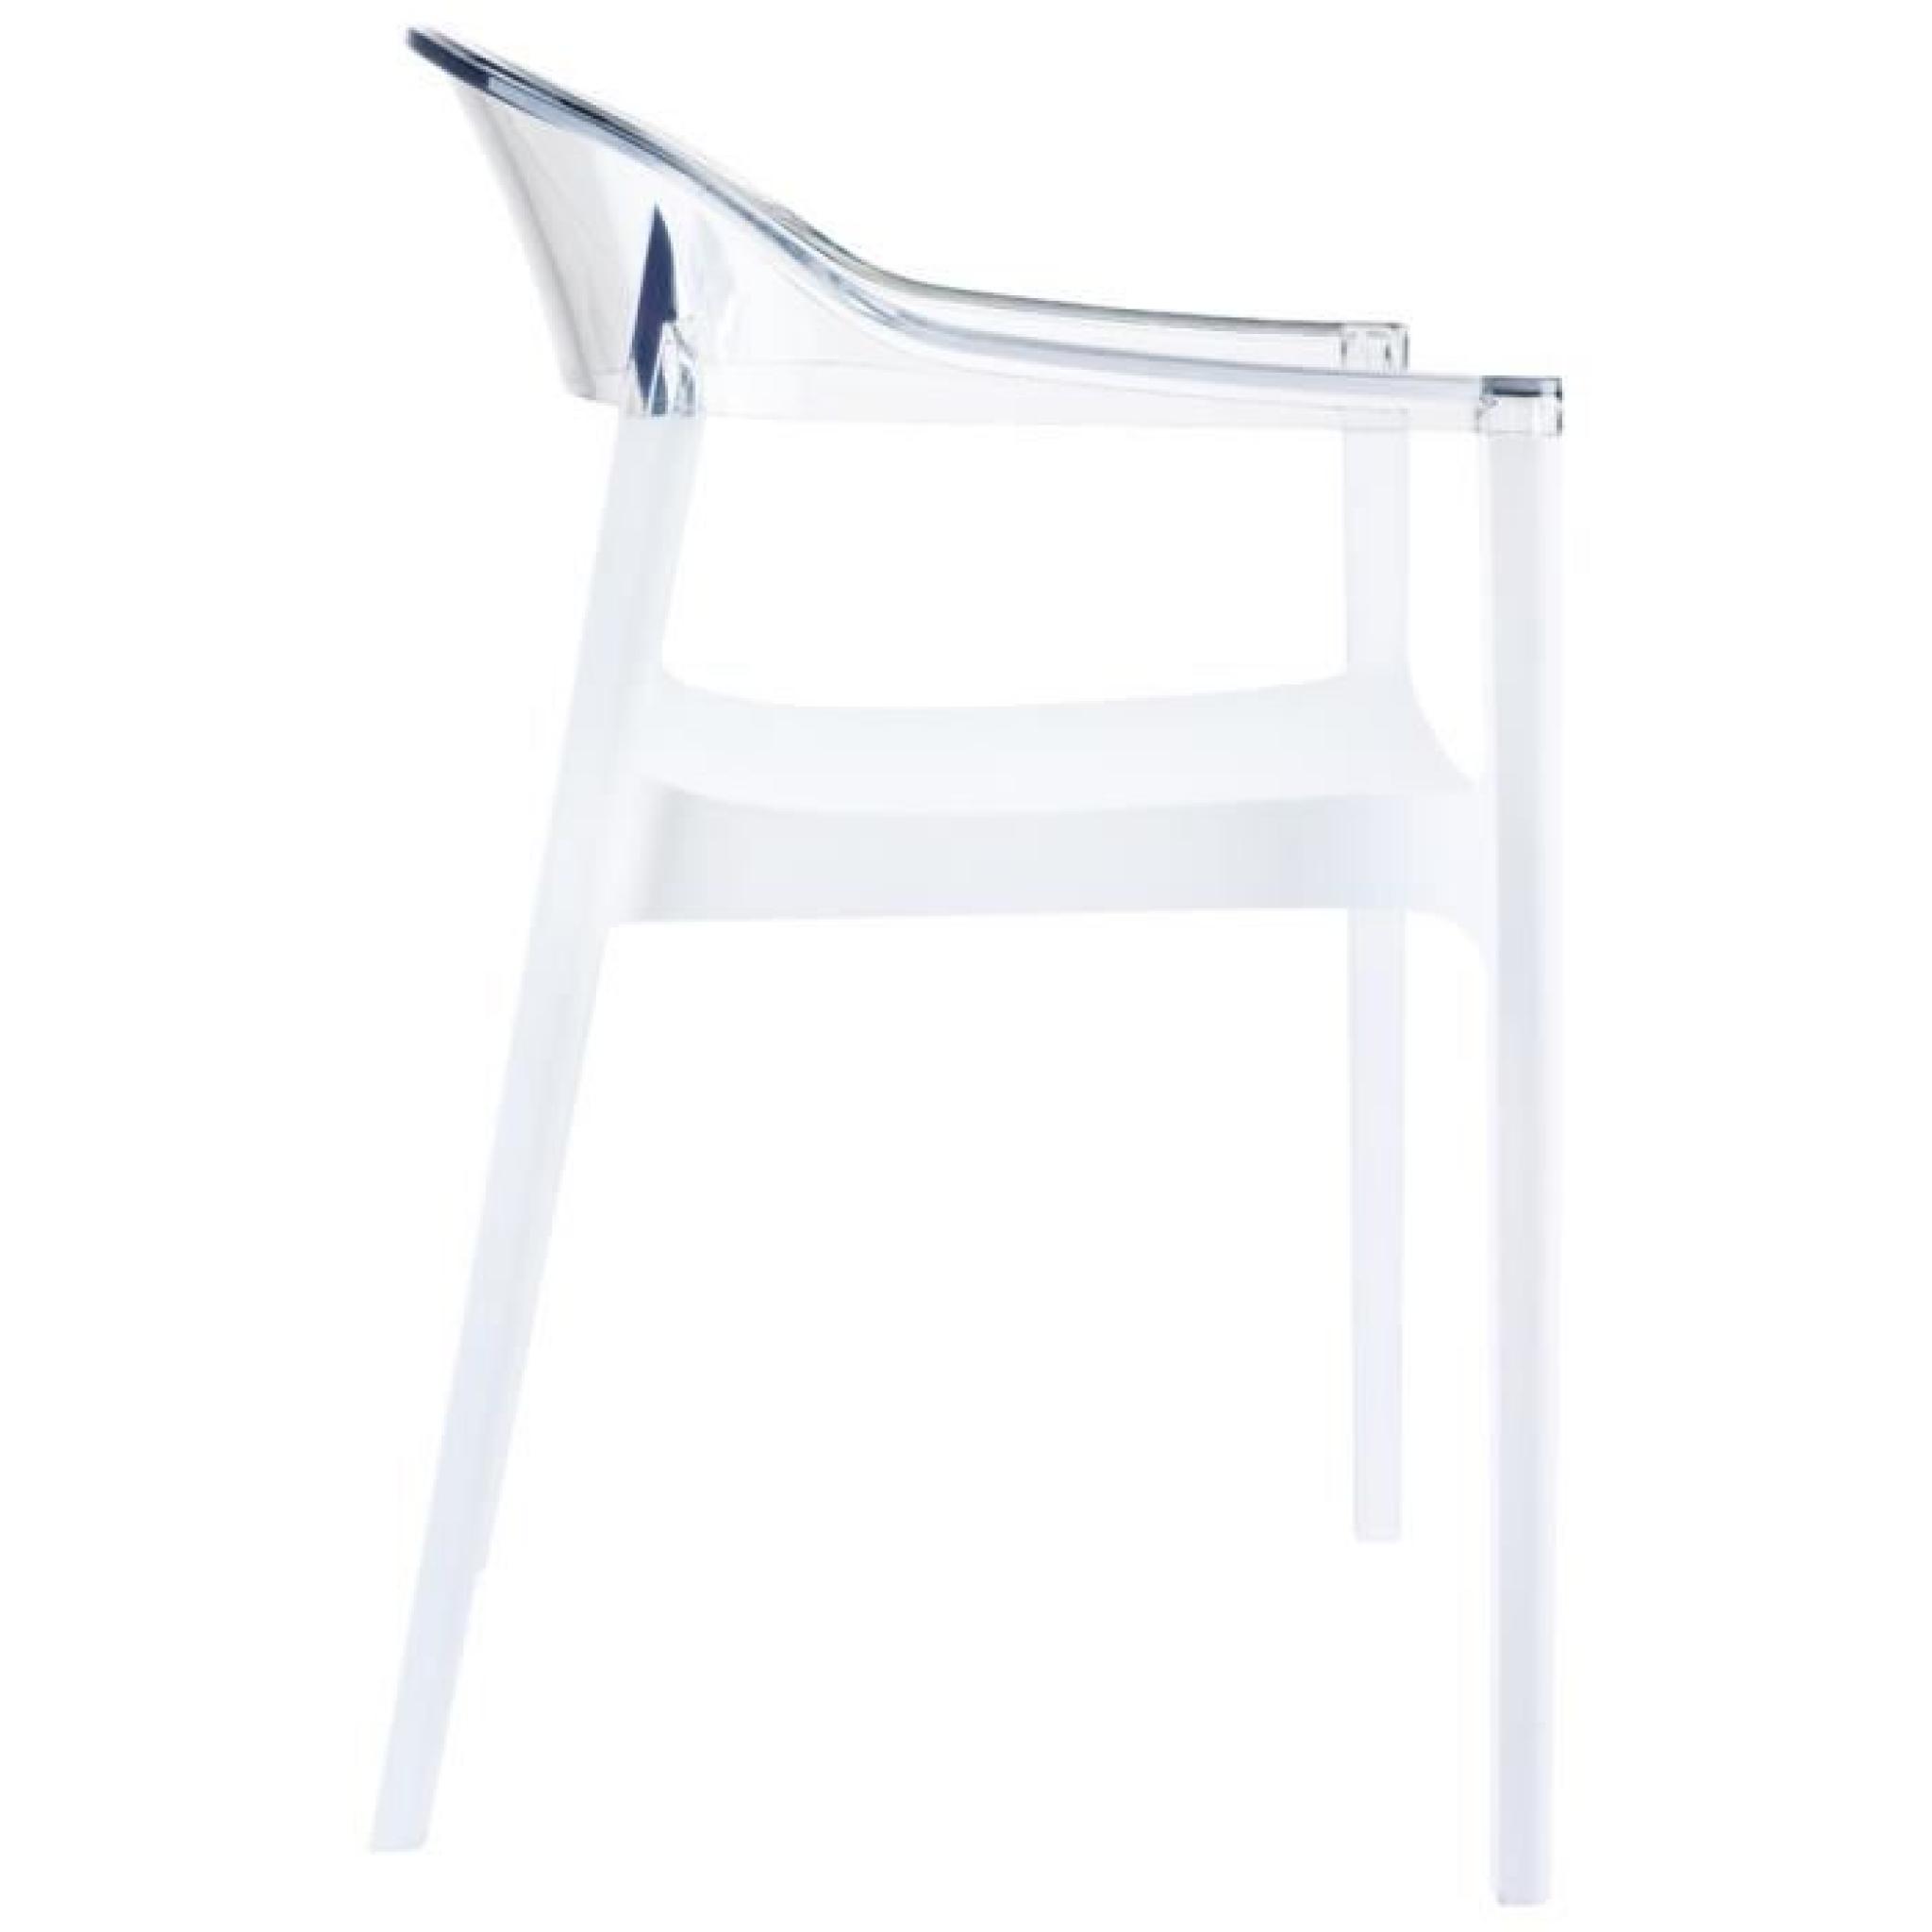 Chaise design 'EMA' blanche et transparente pas cher